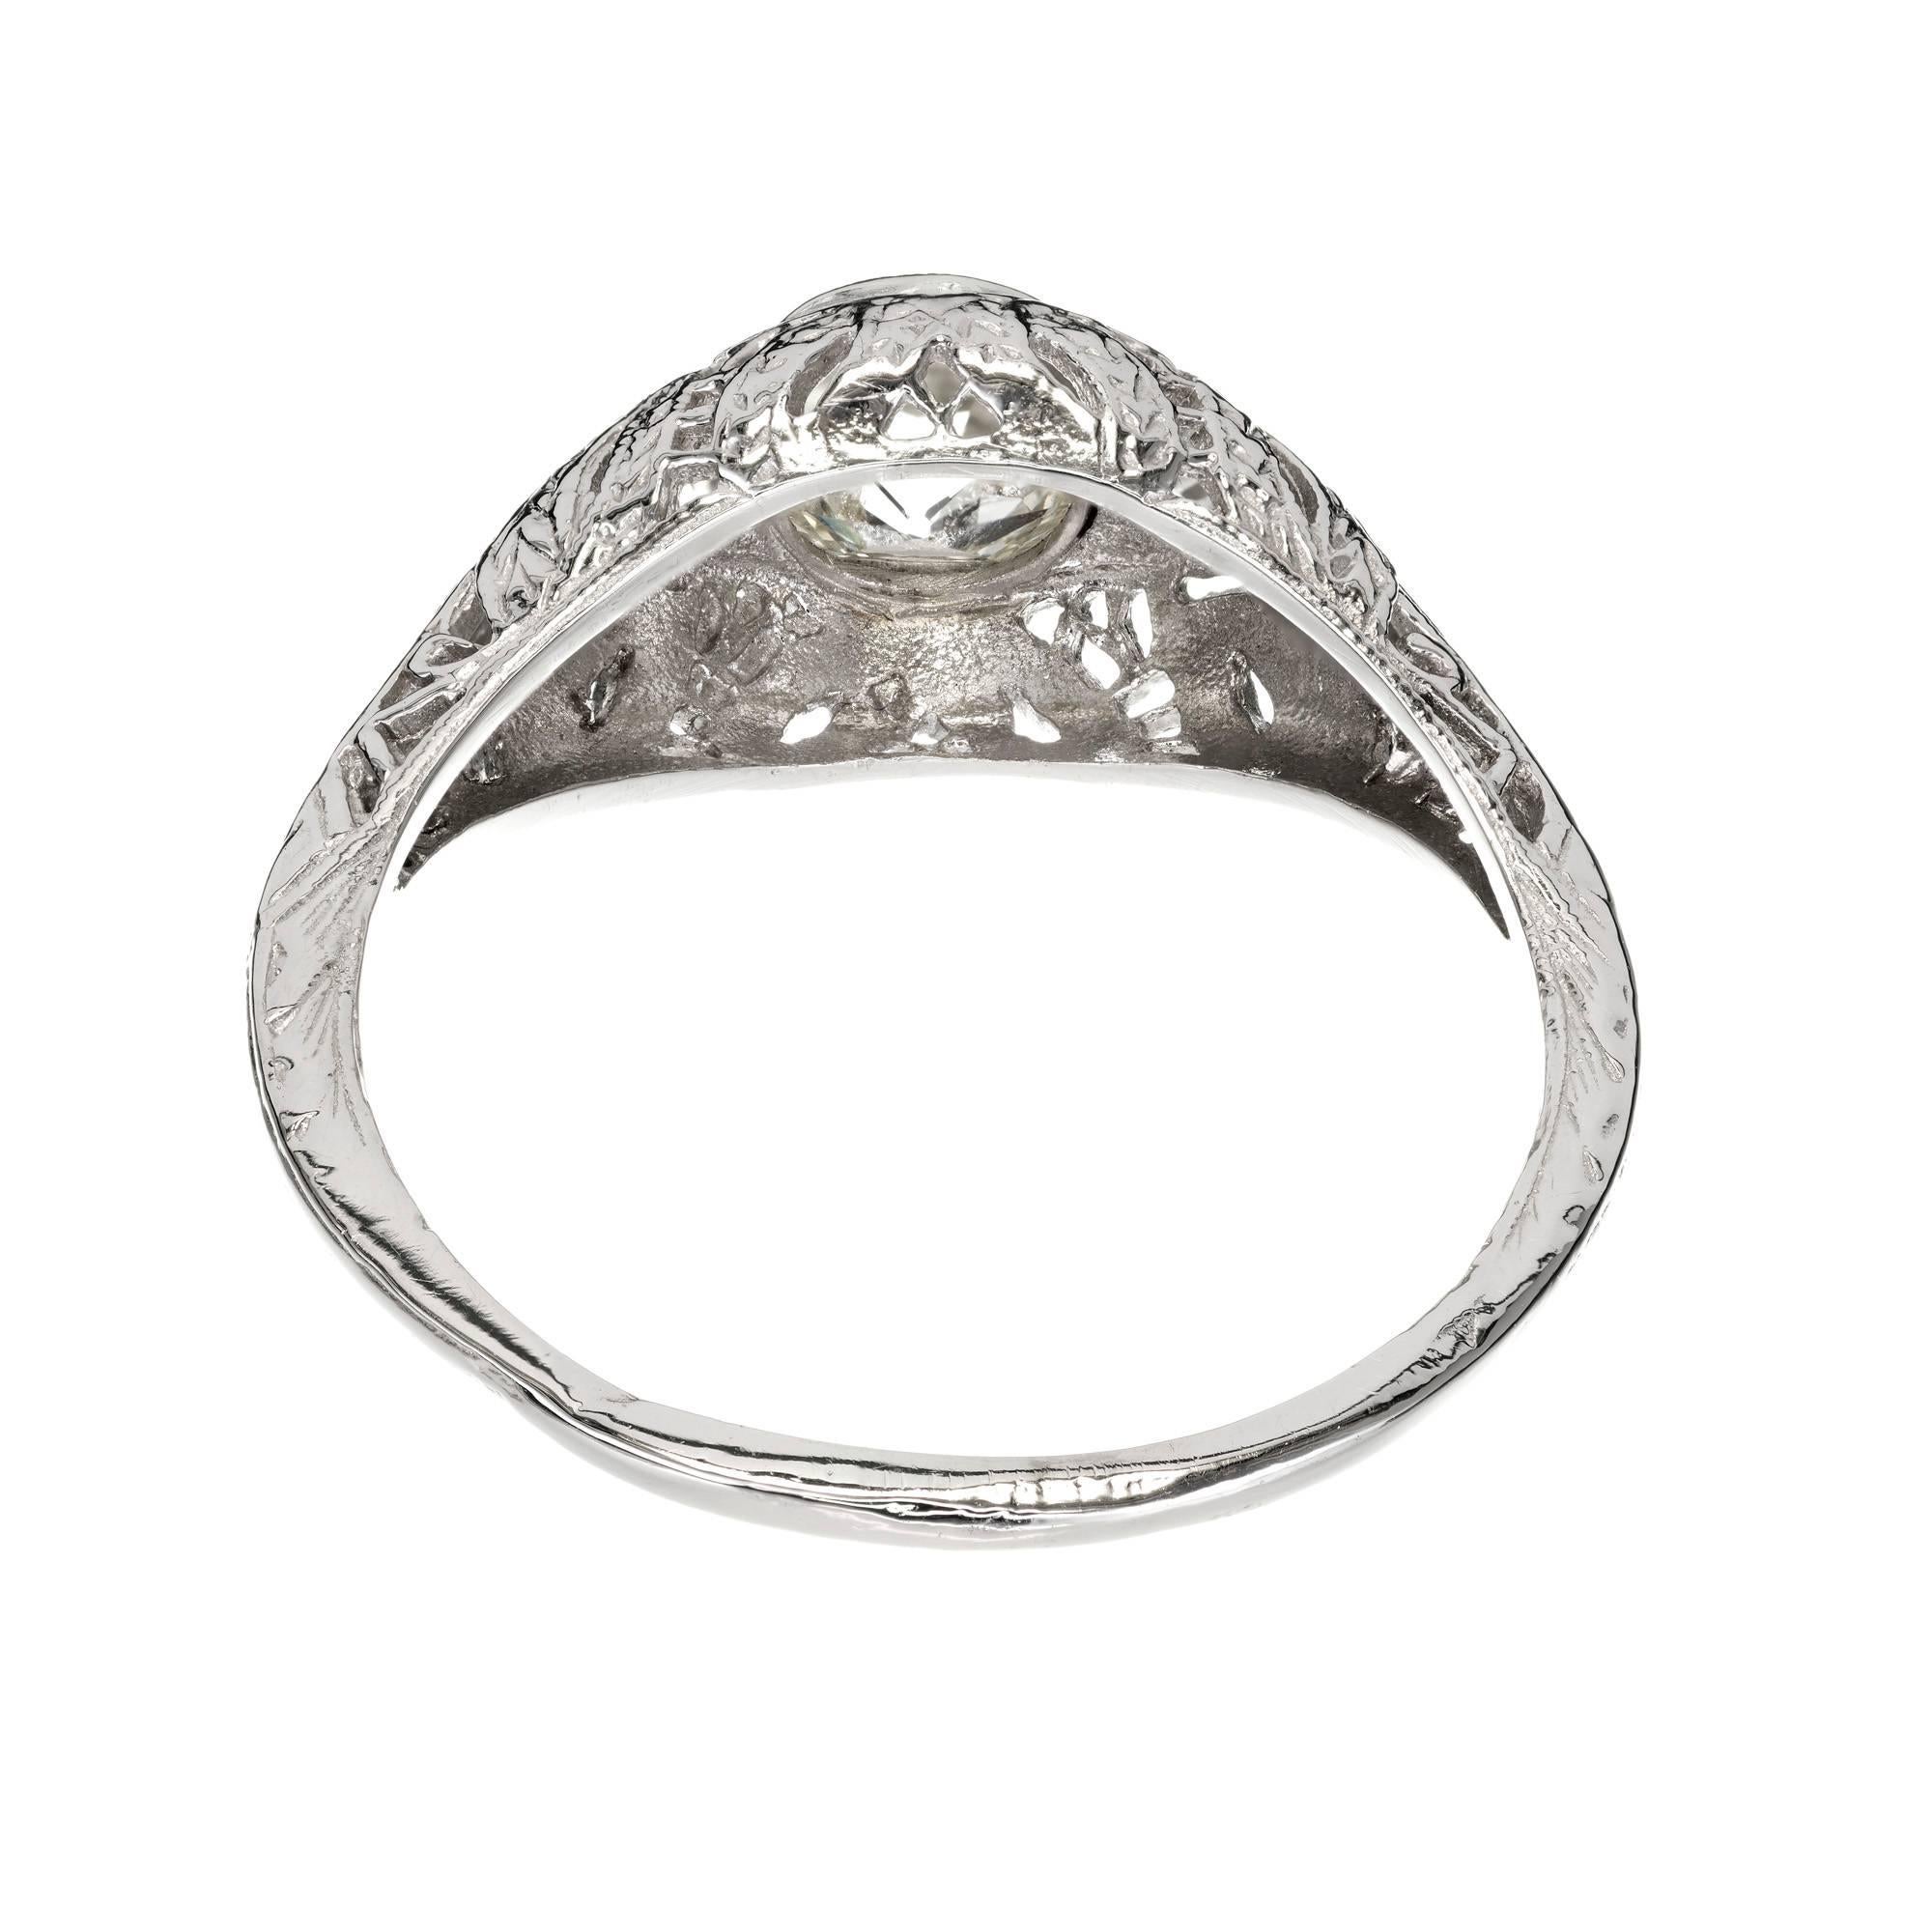 1890s wedding ring